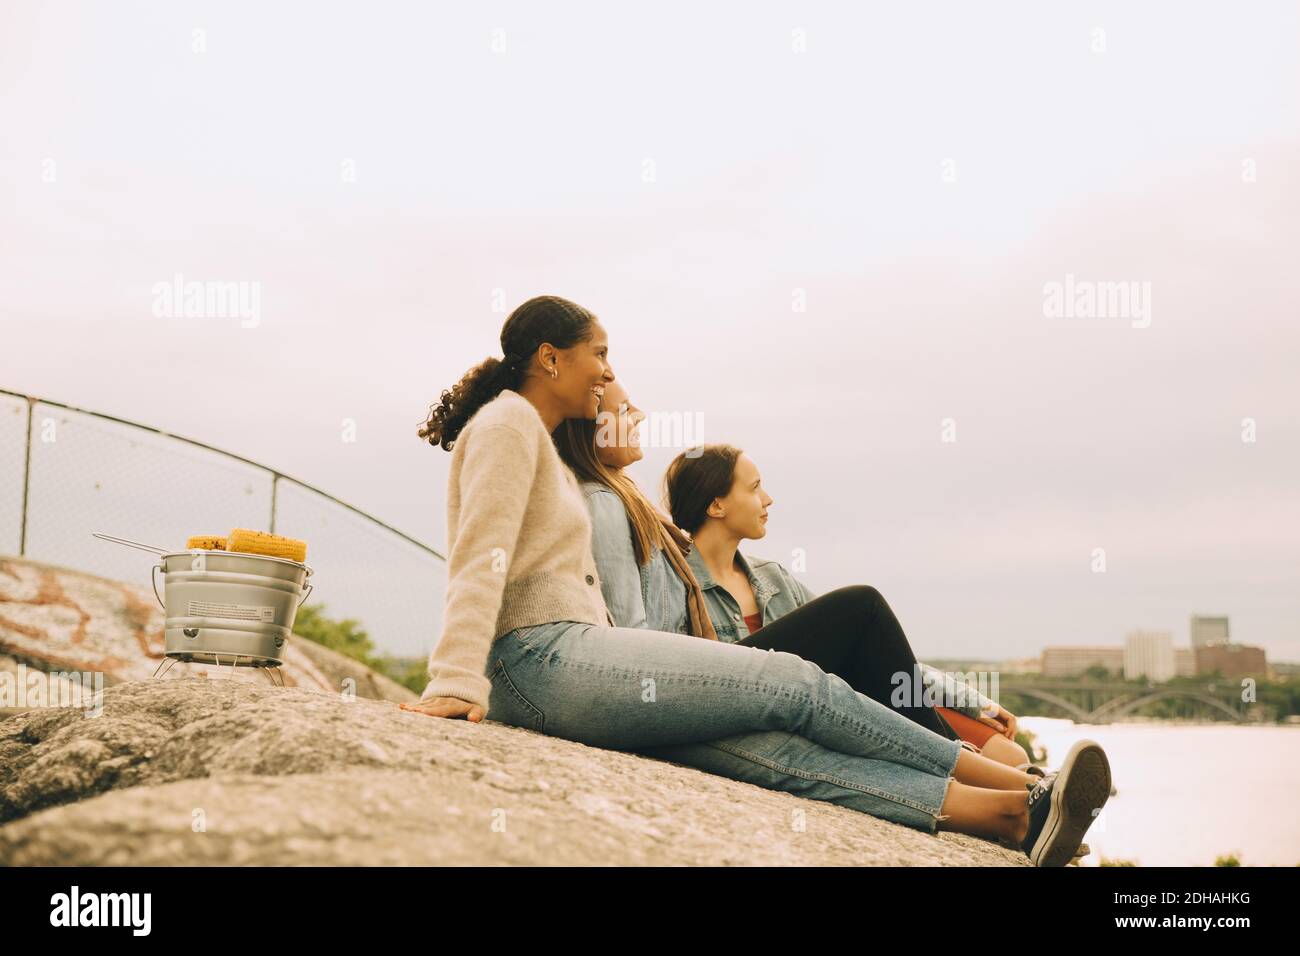 De joyeuses amies qui s'assoit sur la formation de roc au bord du lac contre le ciel Banque D'Images